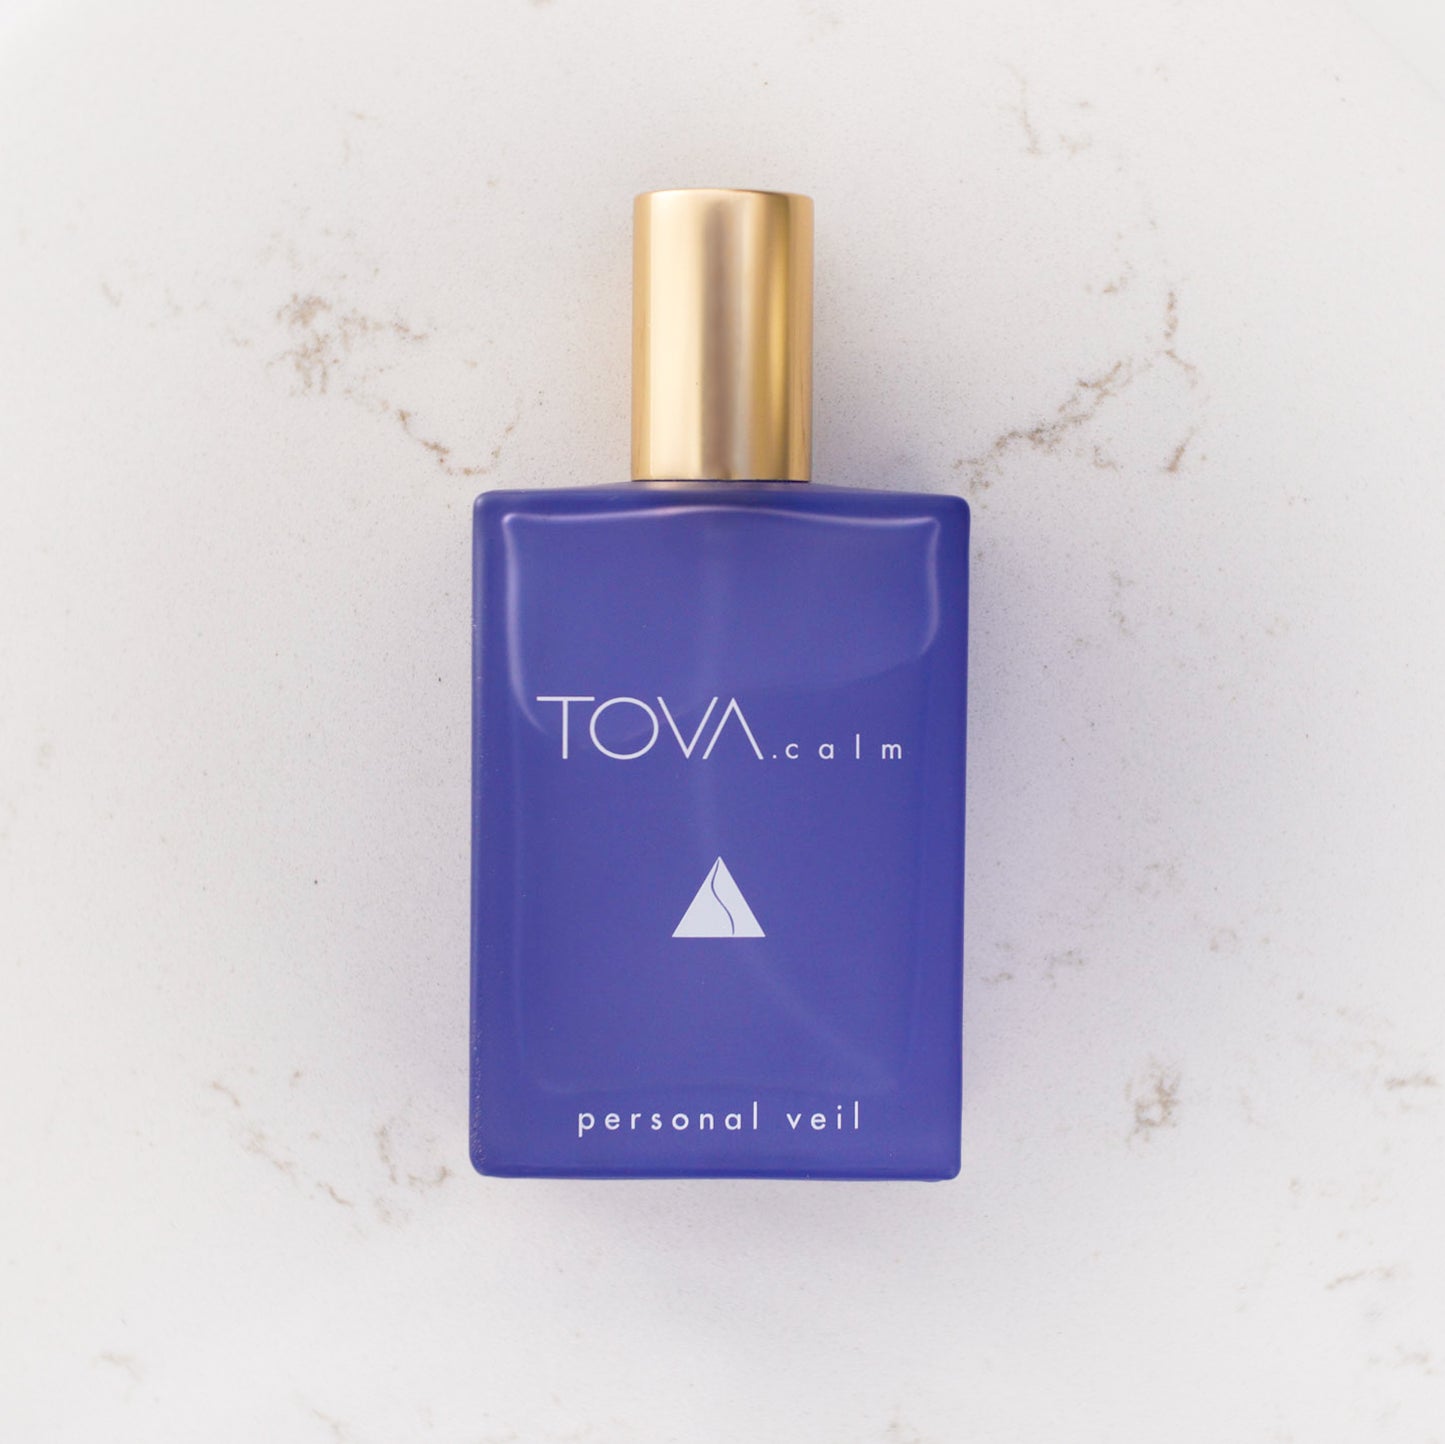 TOVA.calm Personal Veil Fragrance Spray 1.7 fl oz